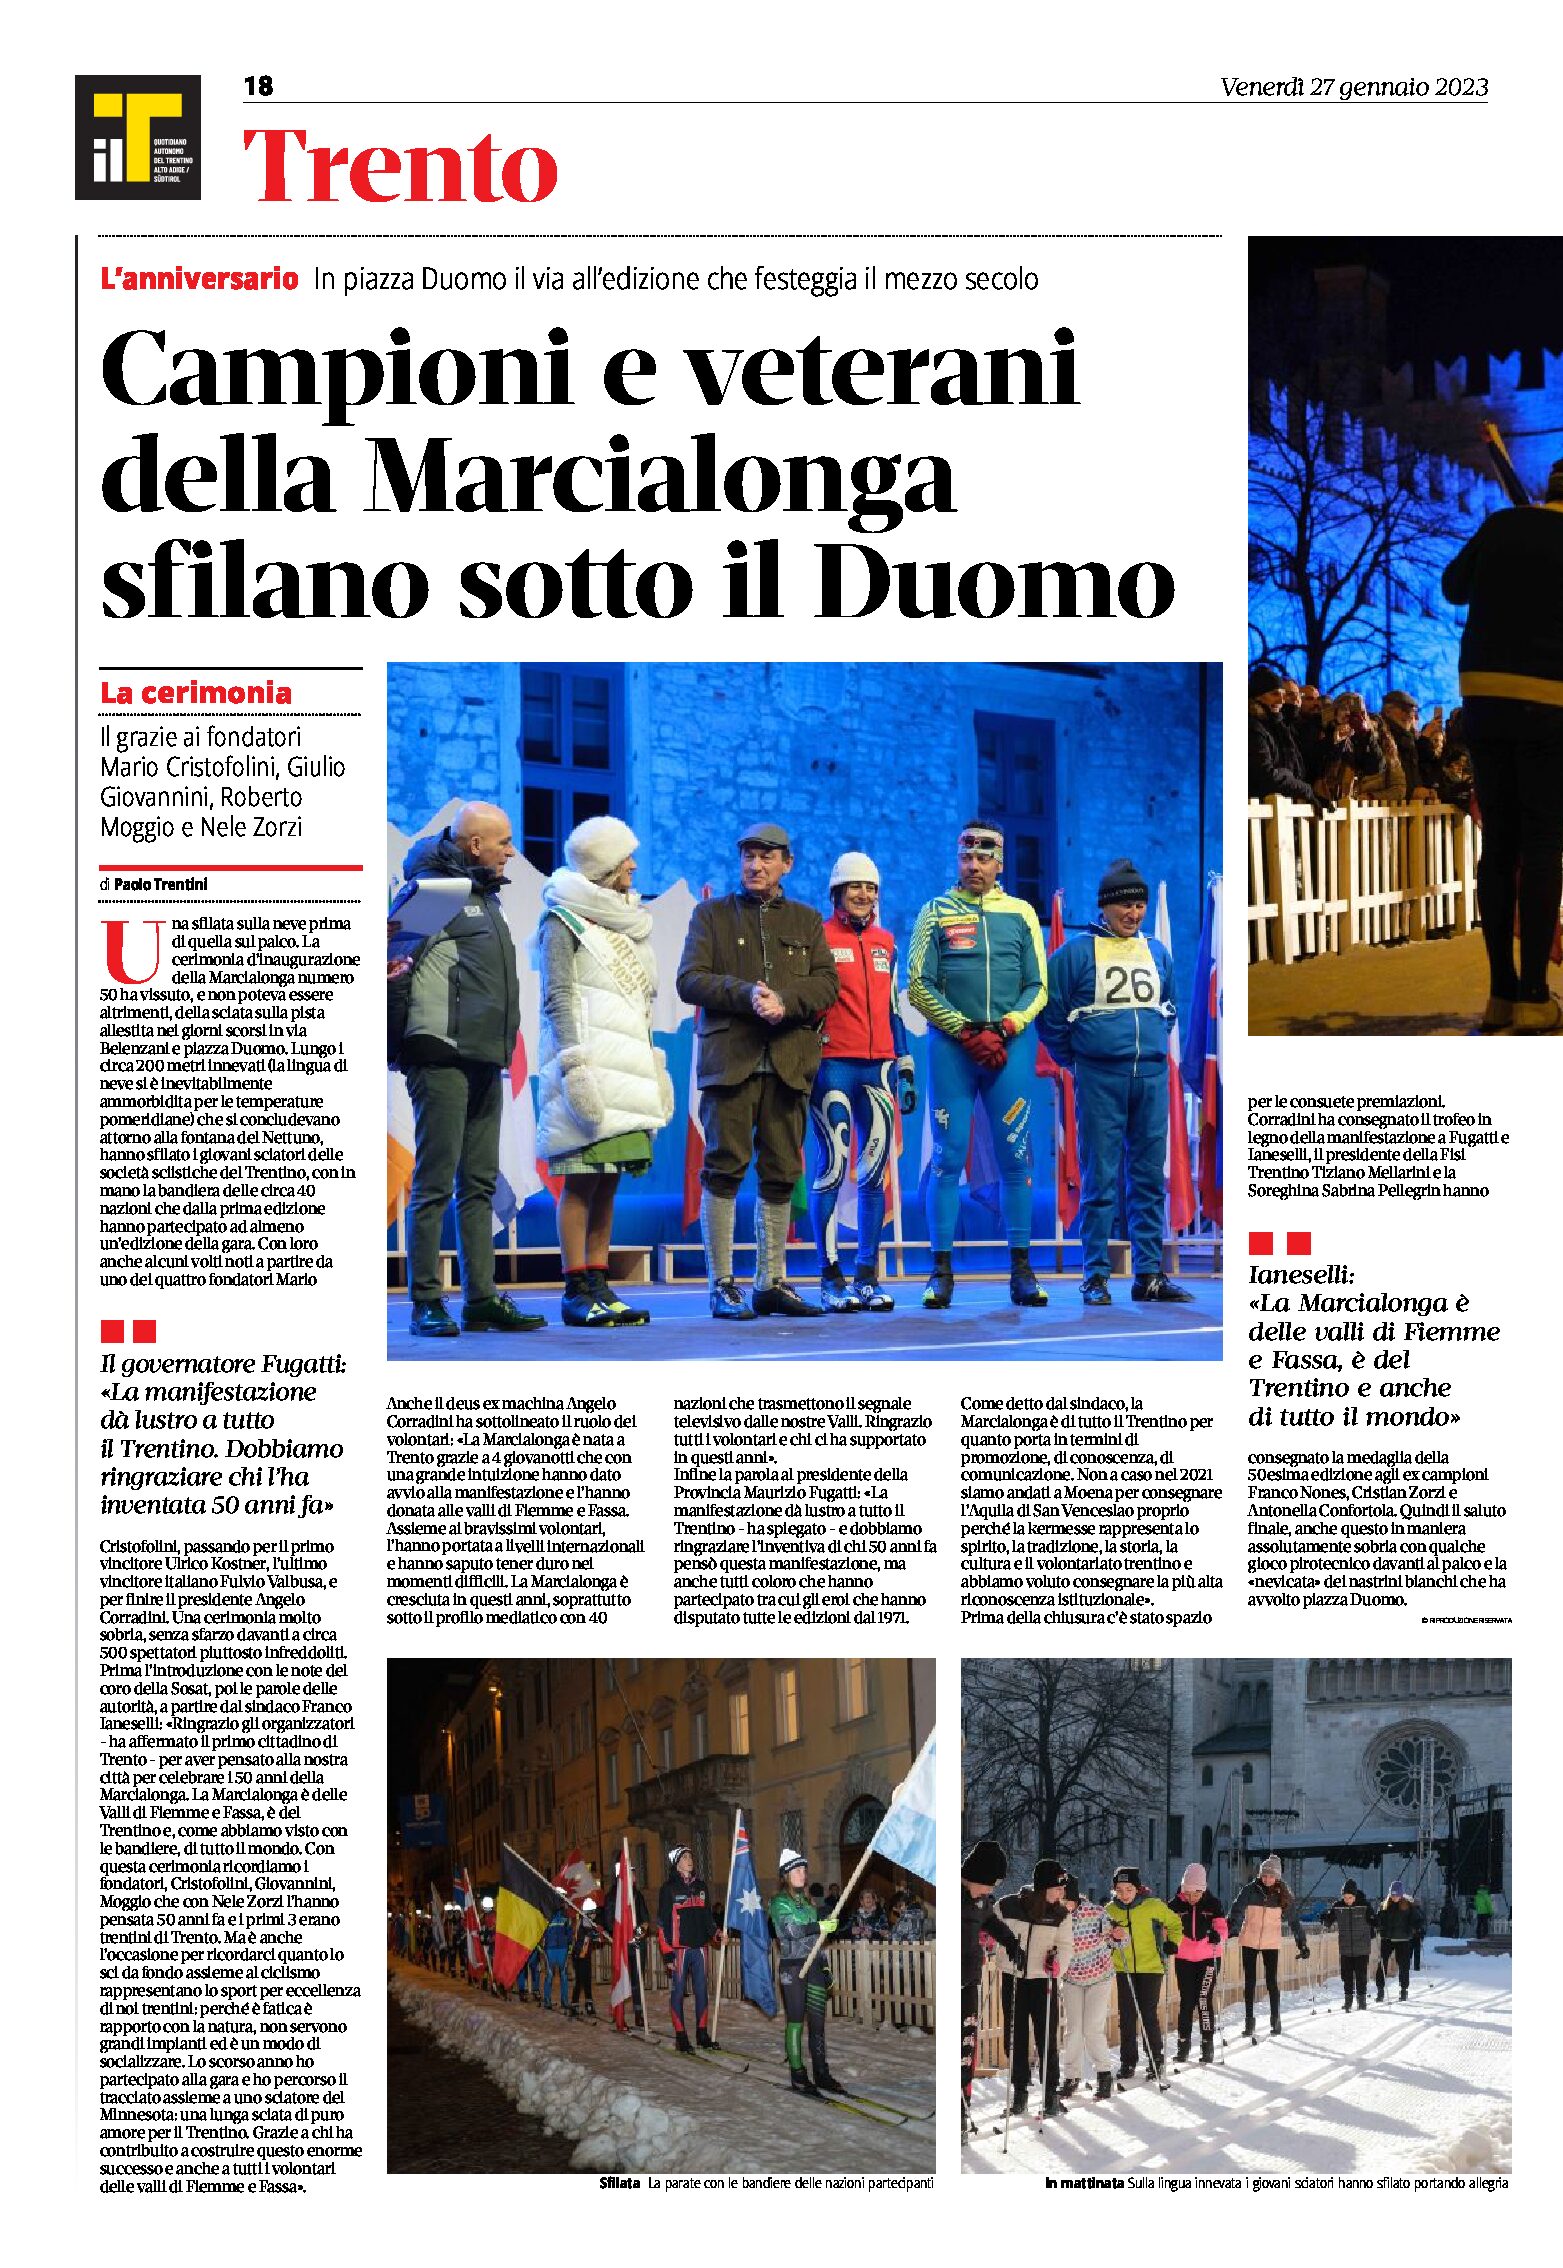 Trento, Marcialonga: campioni e veterani sfilano sotto il Duomo